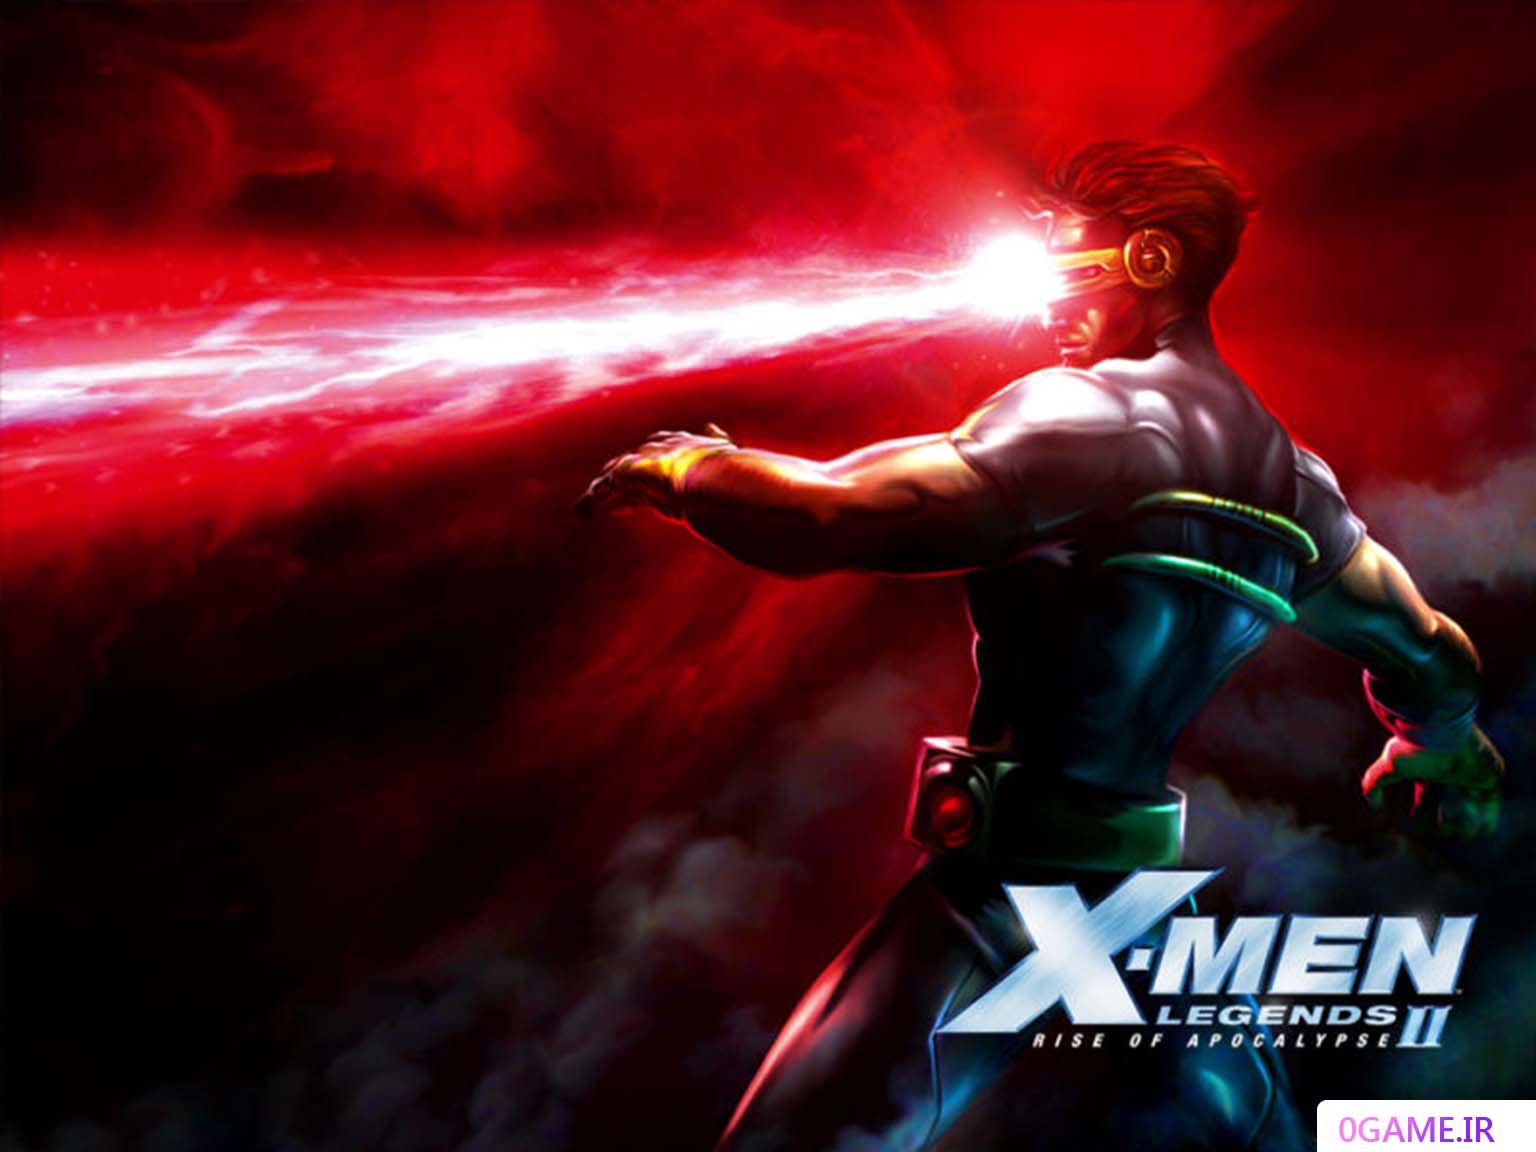 دانلود بازی افسانه های مردان ایکس 2 (X-Men Legends II) نسخه کامل برای کامپیوتر